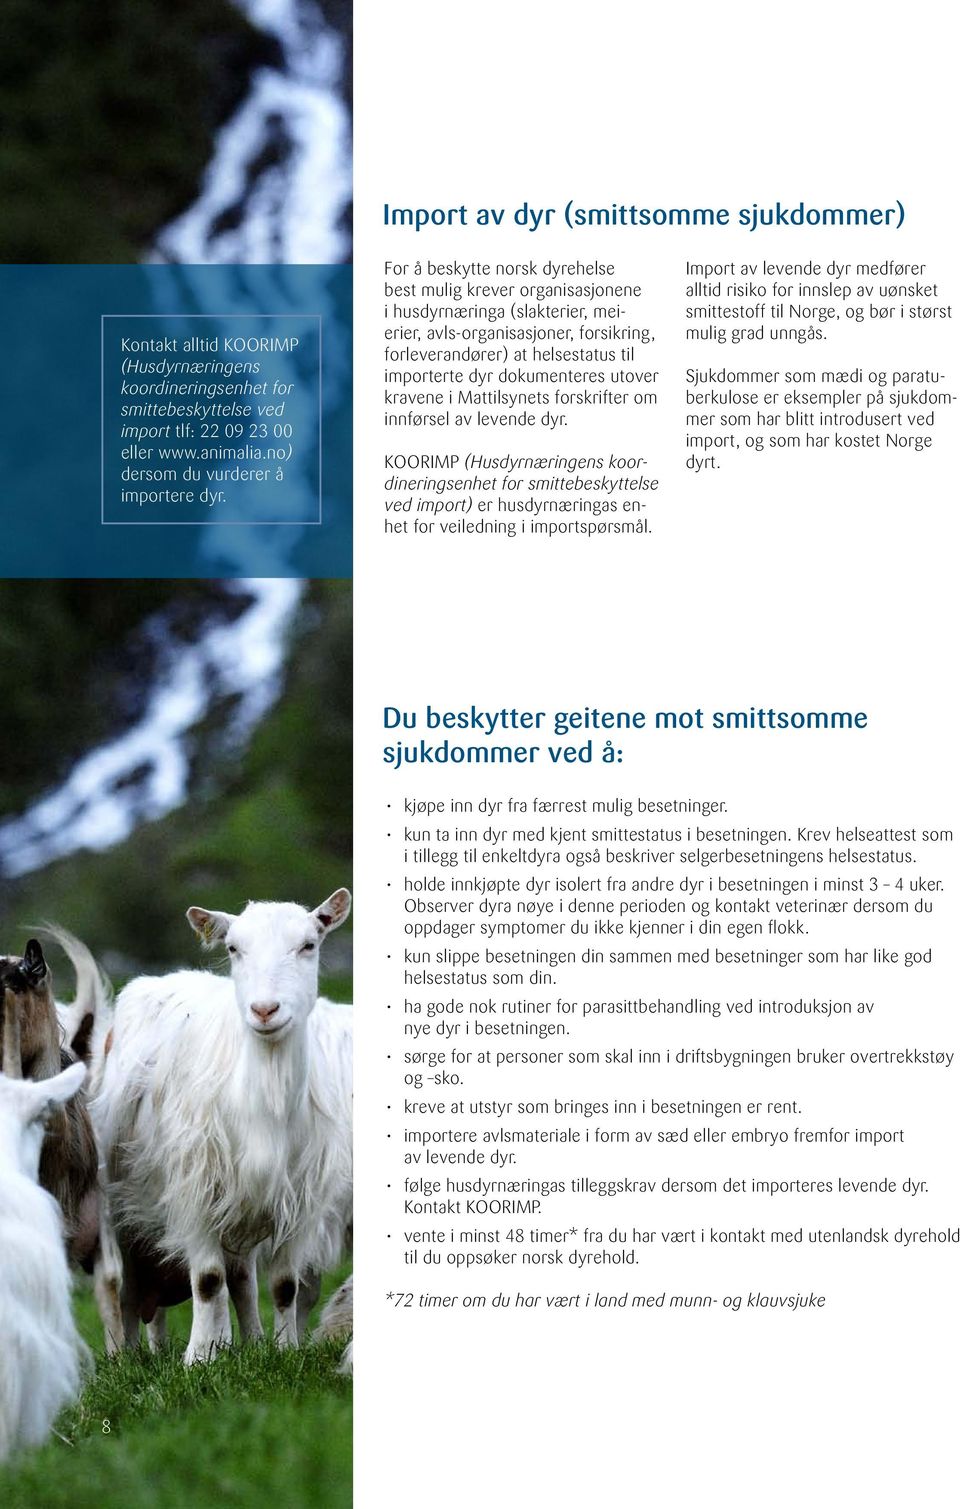 For å beskytte norsk dyrehelse best mulig krever organisasjonene i husdyrnæringa (slakterier, meierier, avls-organisasjoner, forsikring, forleverandører) at helsestatus til importerte dyr